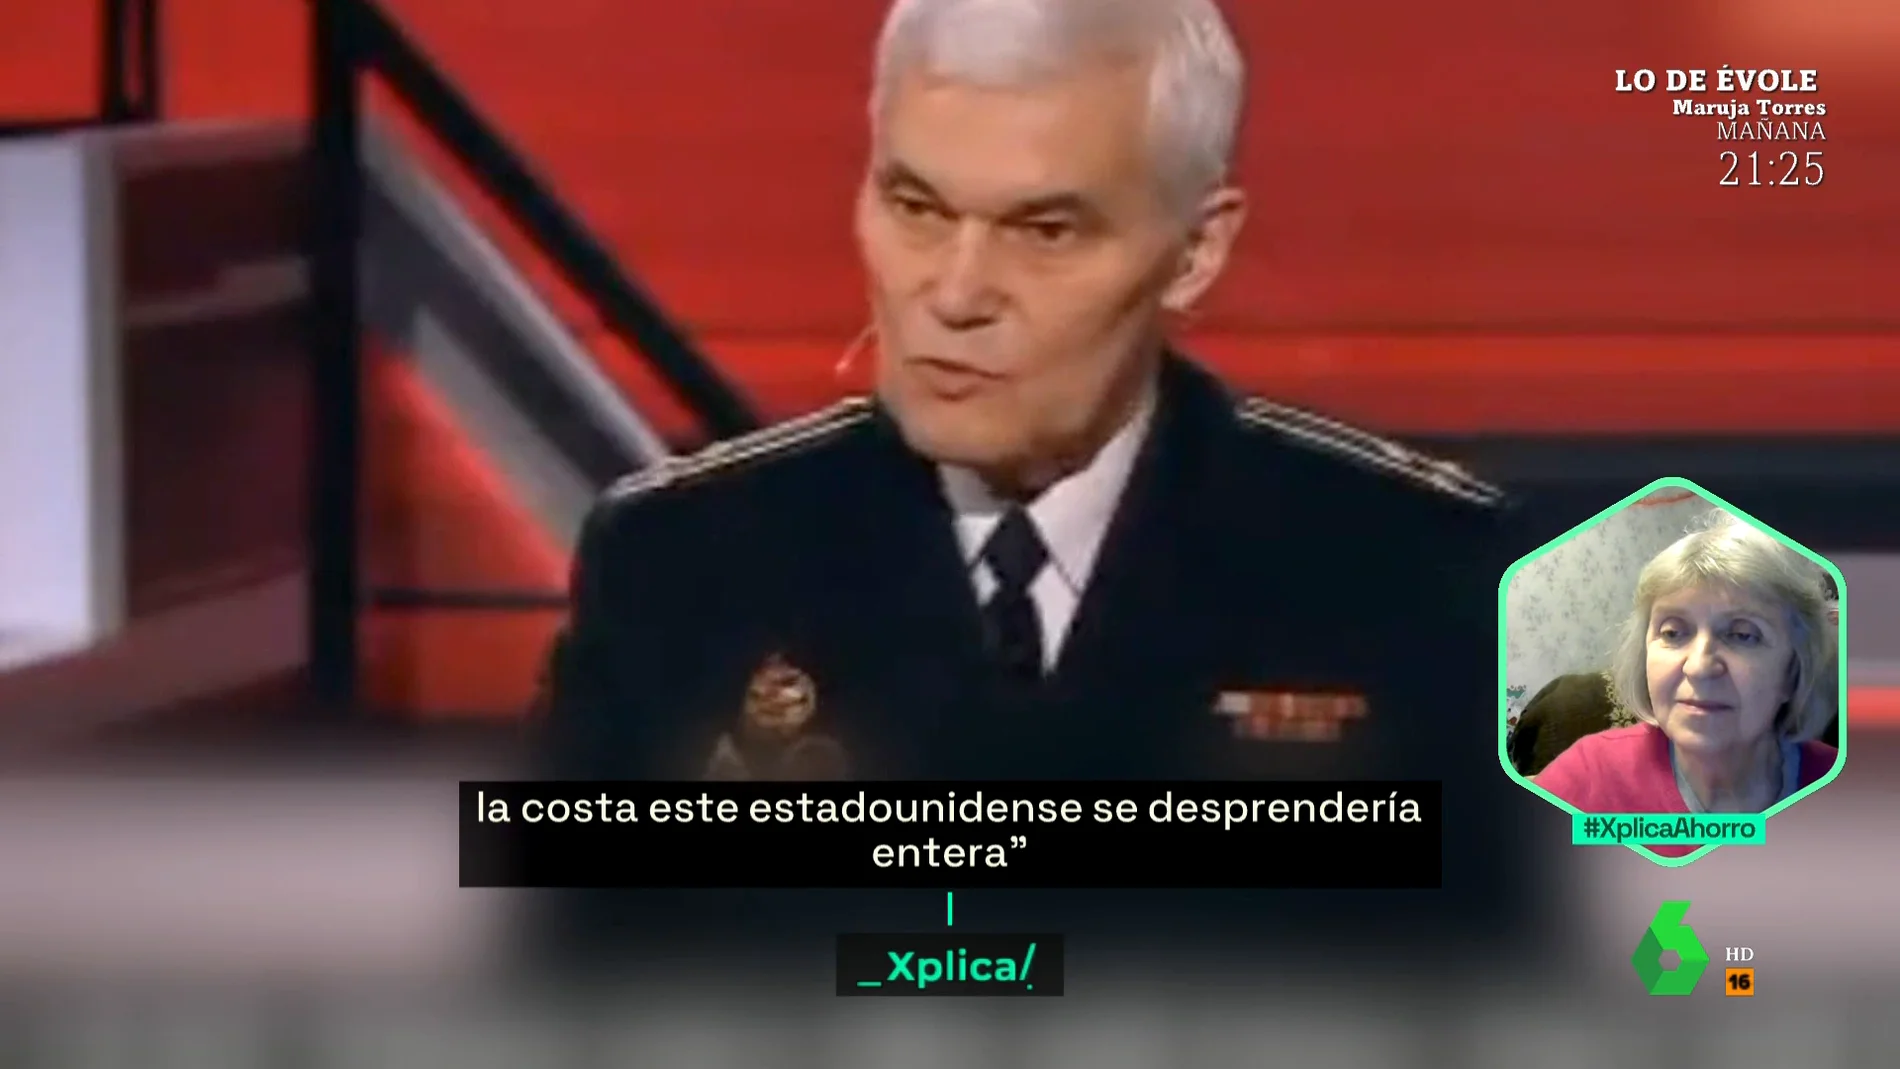 XPLICA TV RUSAS, PROPAGANDA, SUPERMÁN